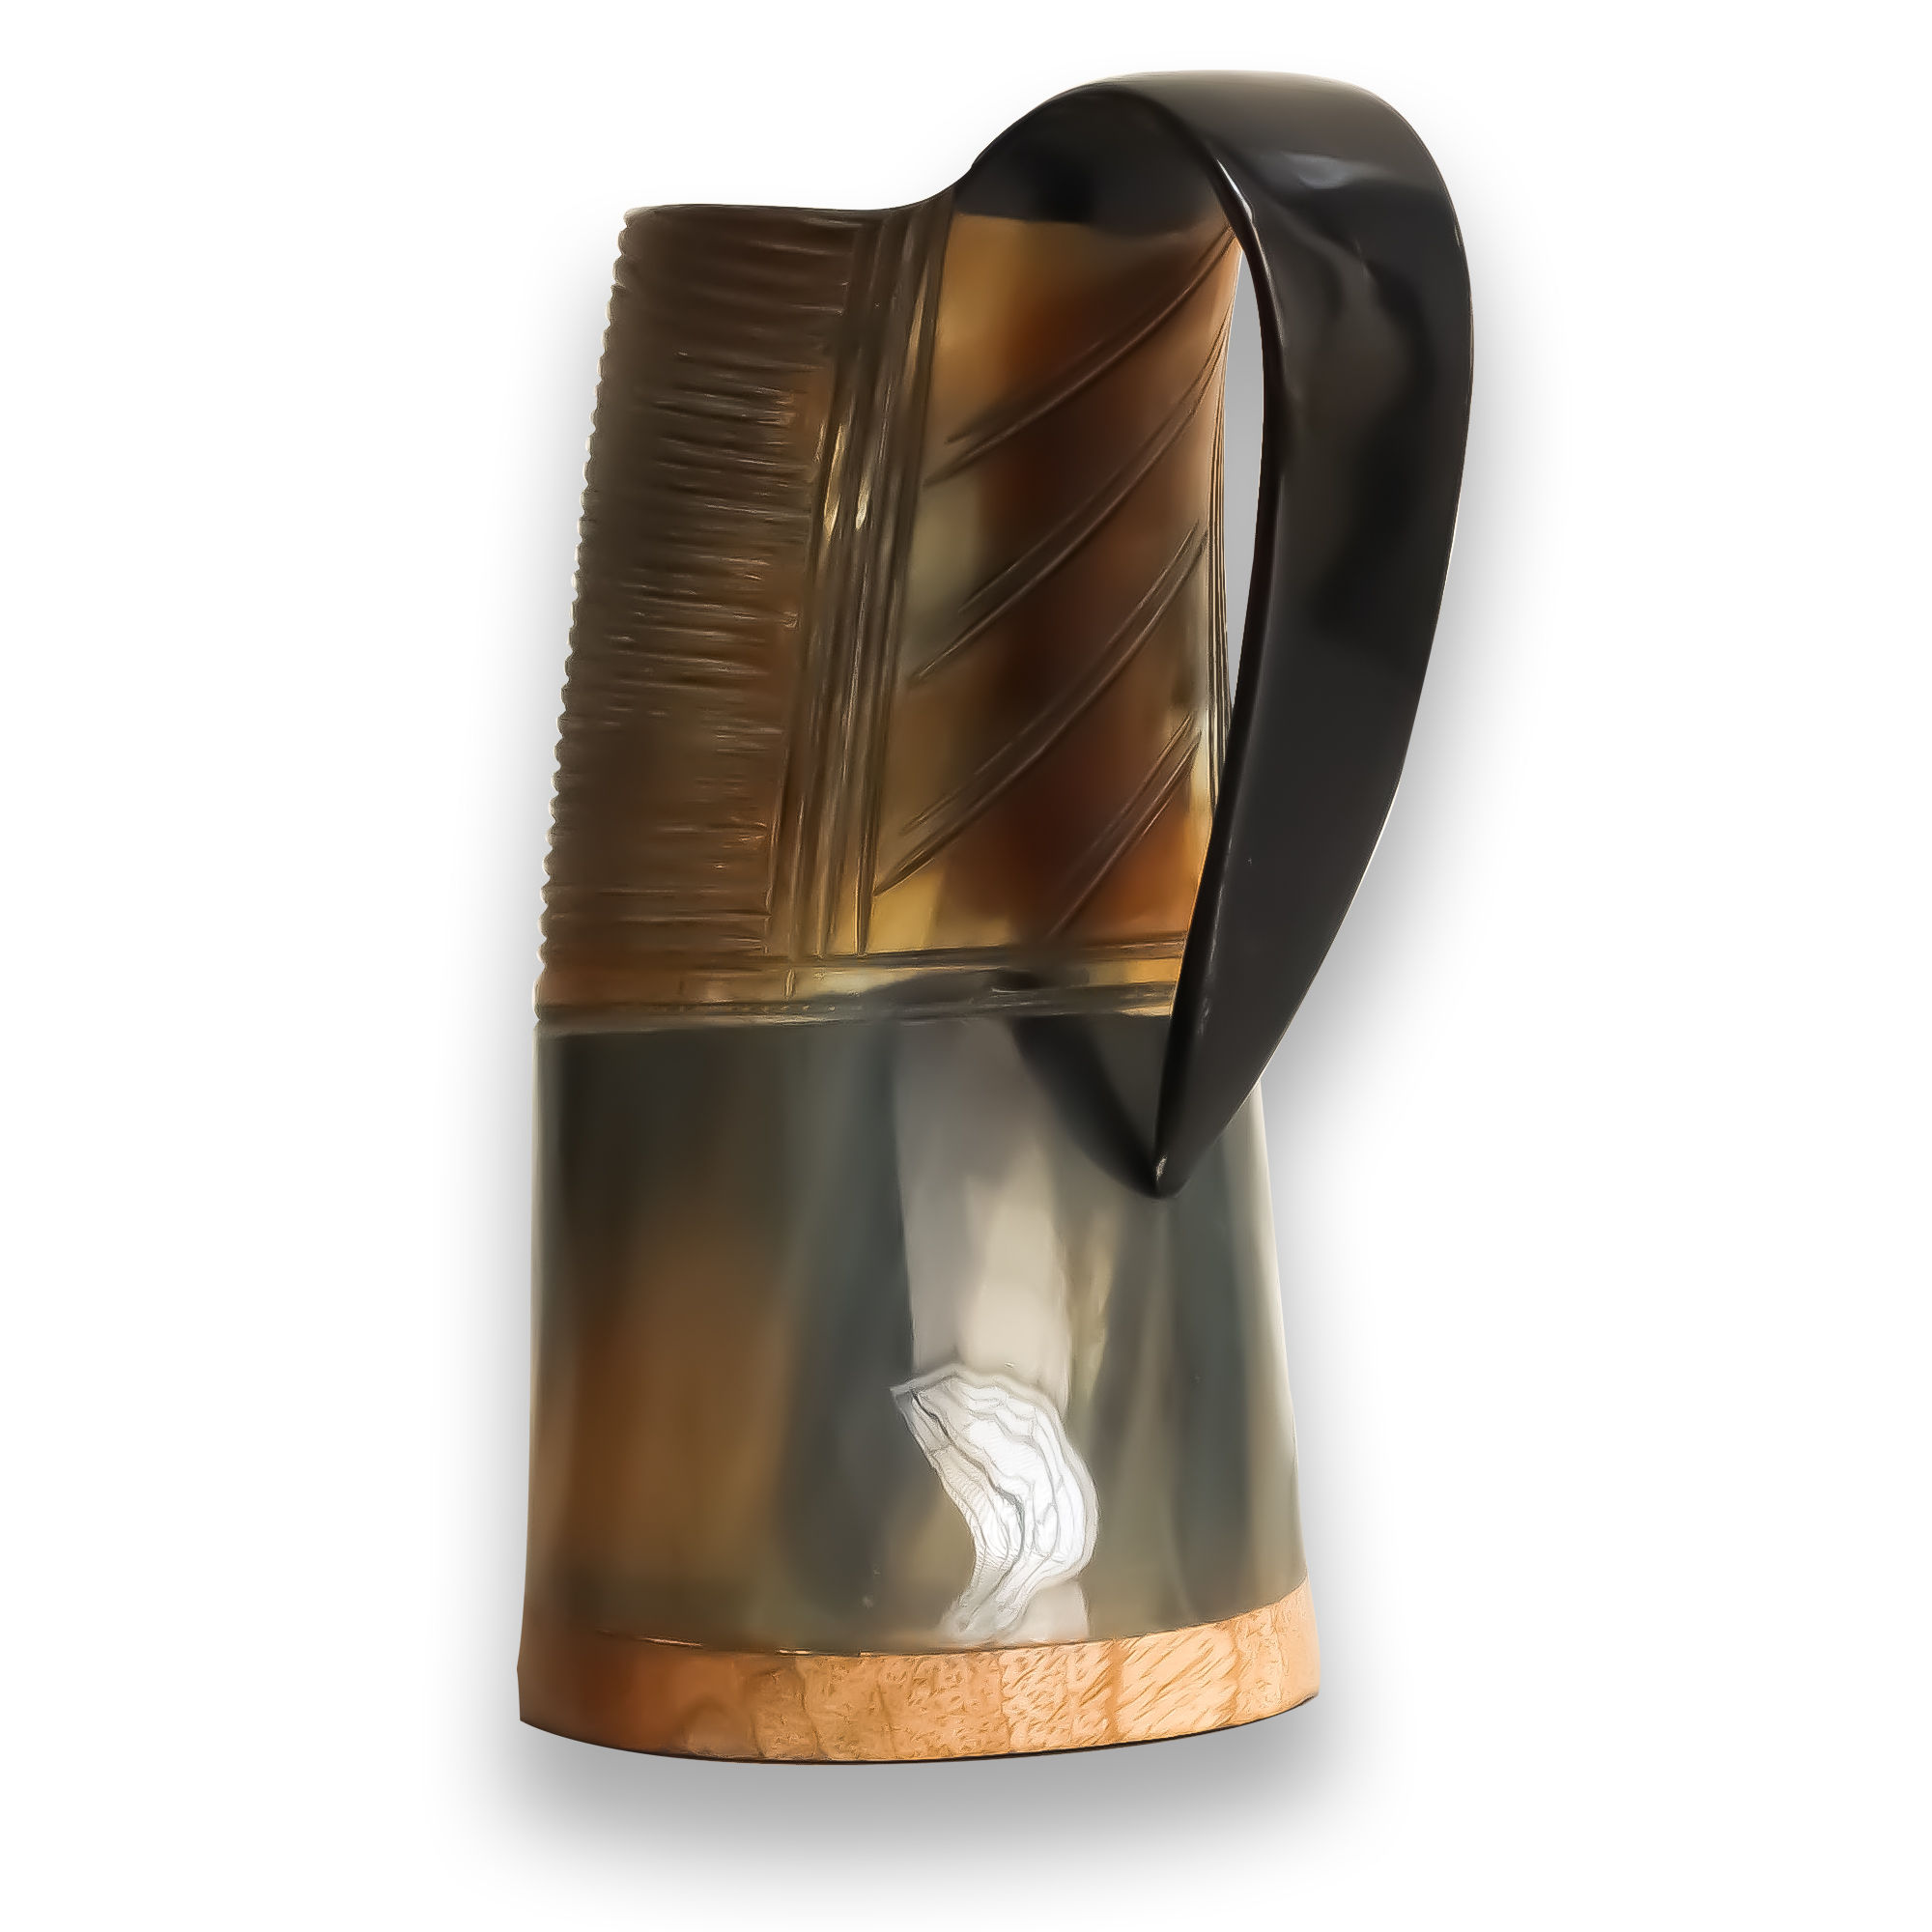 Engraved Viking Drinking Horn Mug Safety Hold Hot and Cold Stunning Horn Mug Personalized Buffalo Tankard Horn Mug